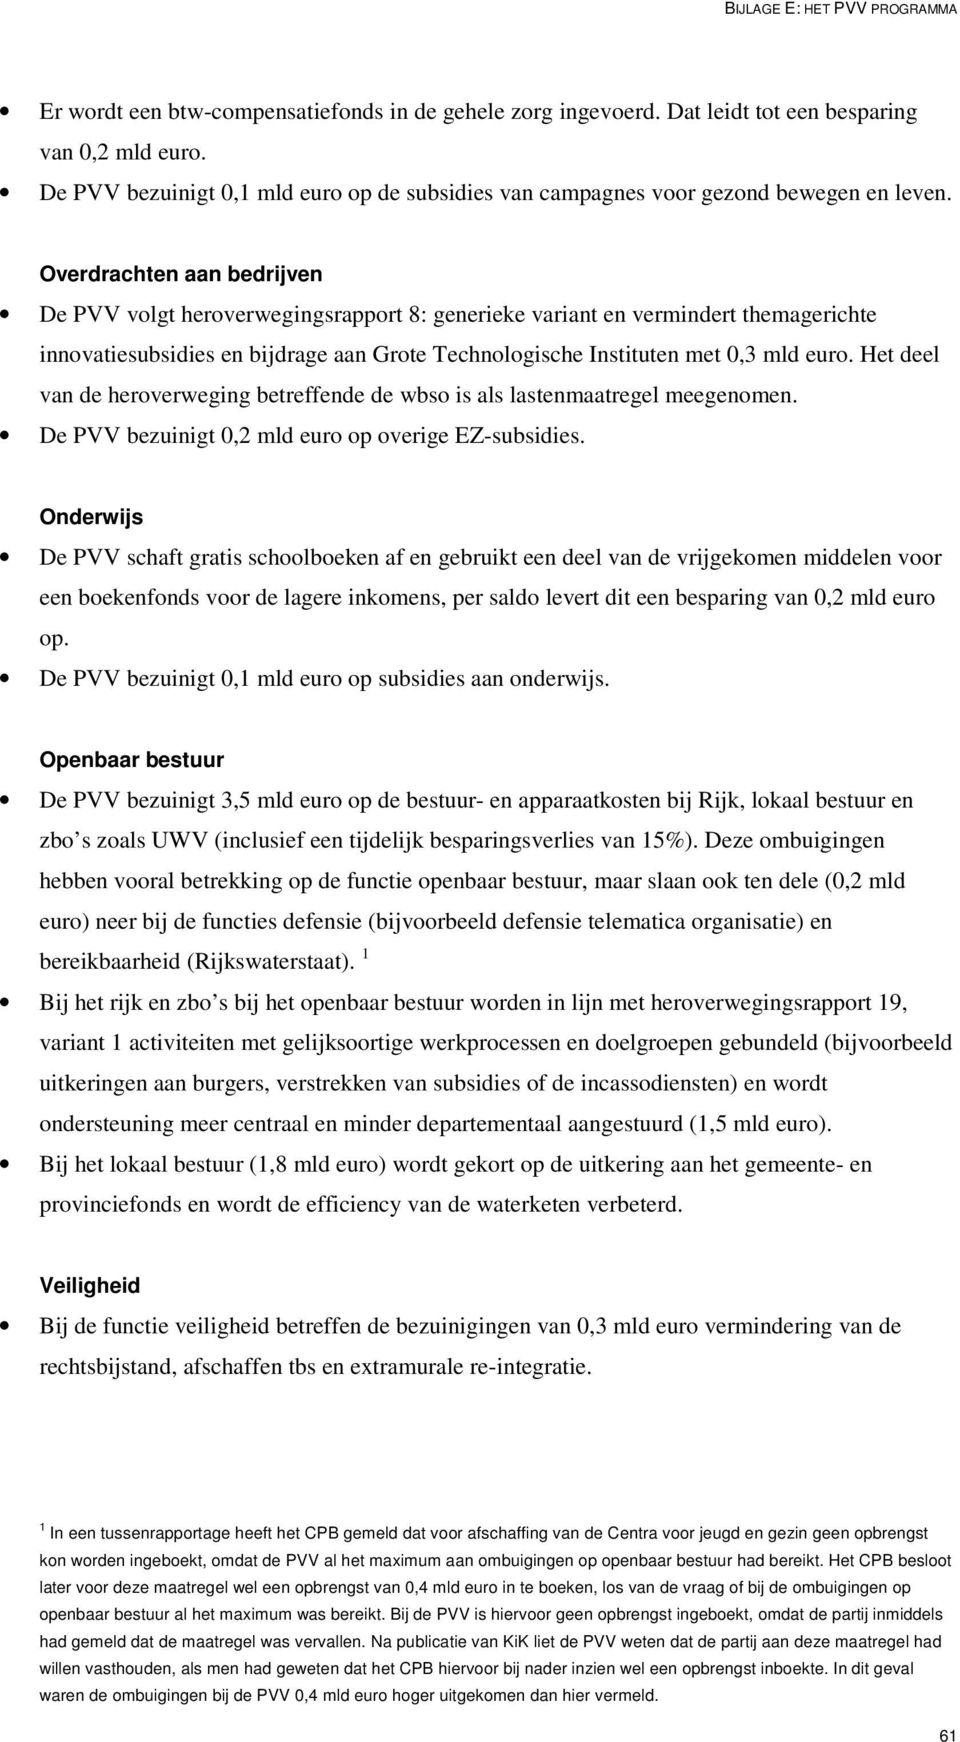 Overdrachten aan bedrijven De PVV volgt heroverwegingsrapport 8: generieke variant en vermindert themagerichte innovatiesubsidies en bijdrage aan Grote Technologische Instituten met 0,3 mld euro.